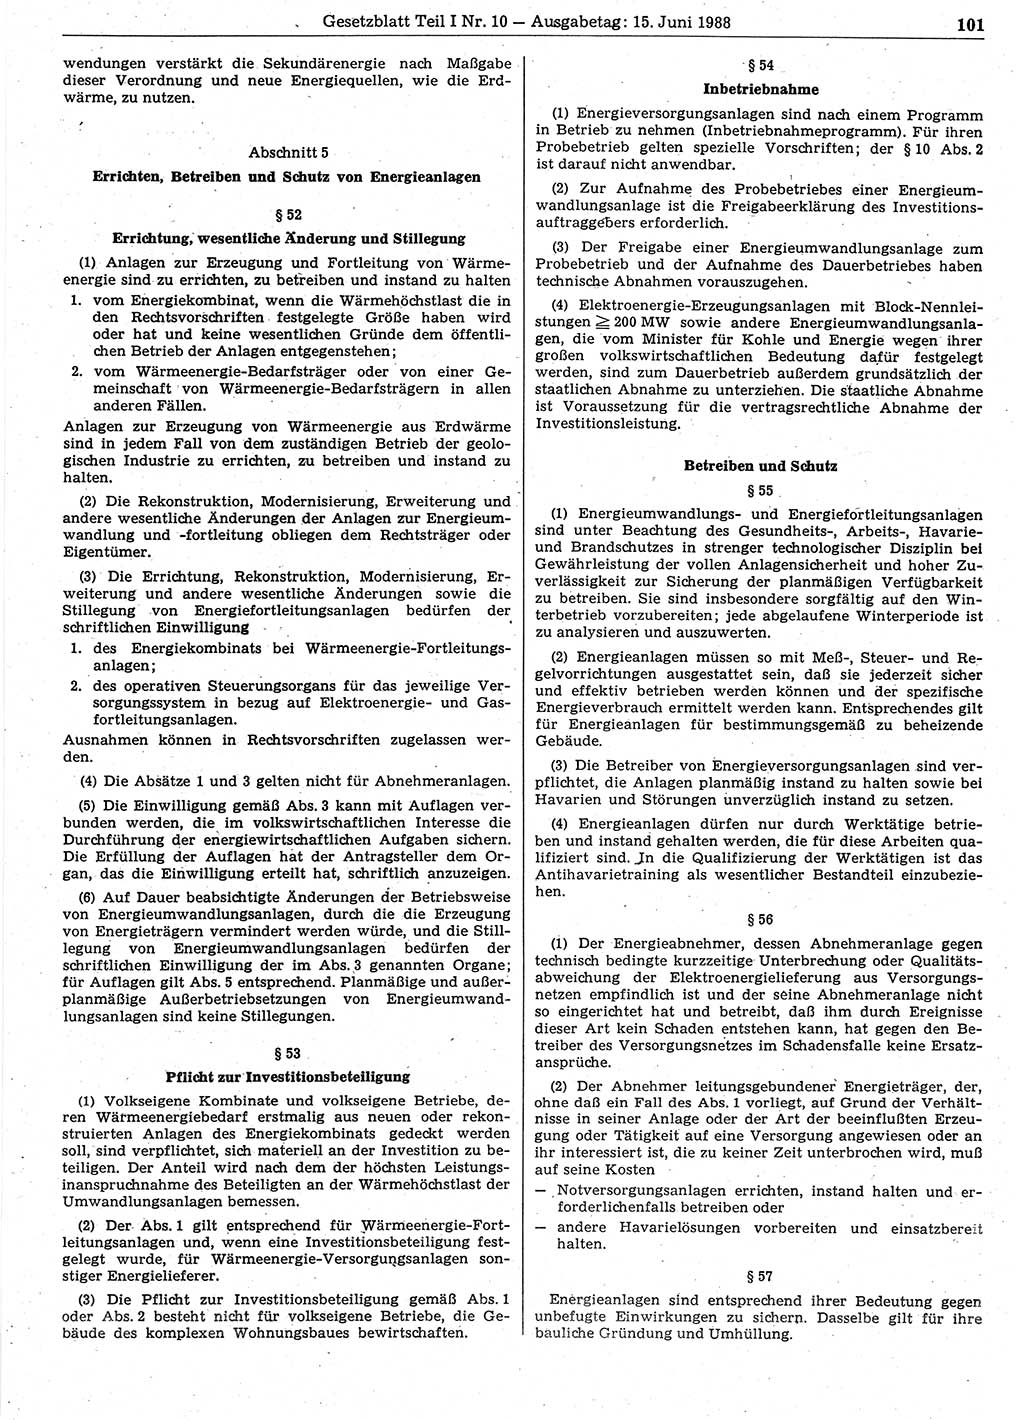 Gesetzblatt (GBl.) der Deutschen Demokratischen Republik (DDR) Teil Ⅰ 1988, Seite 101 (GBl. DDR Ⅰ 1988, S. 101)